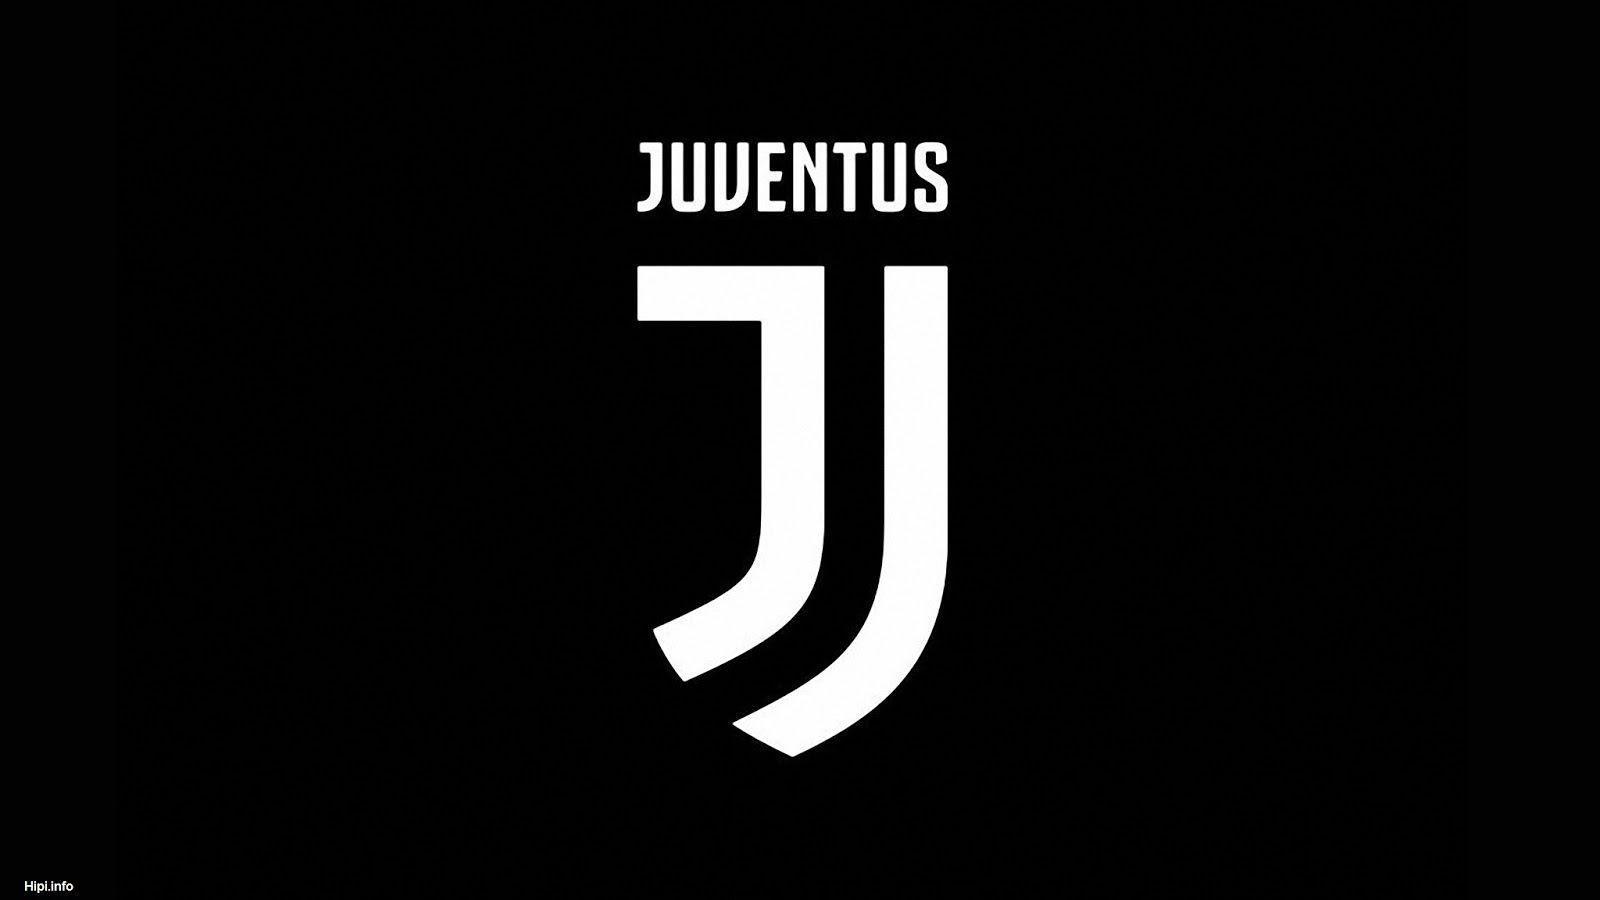 Juventus Iphone Wallpapers On Wallpaperdog